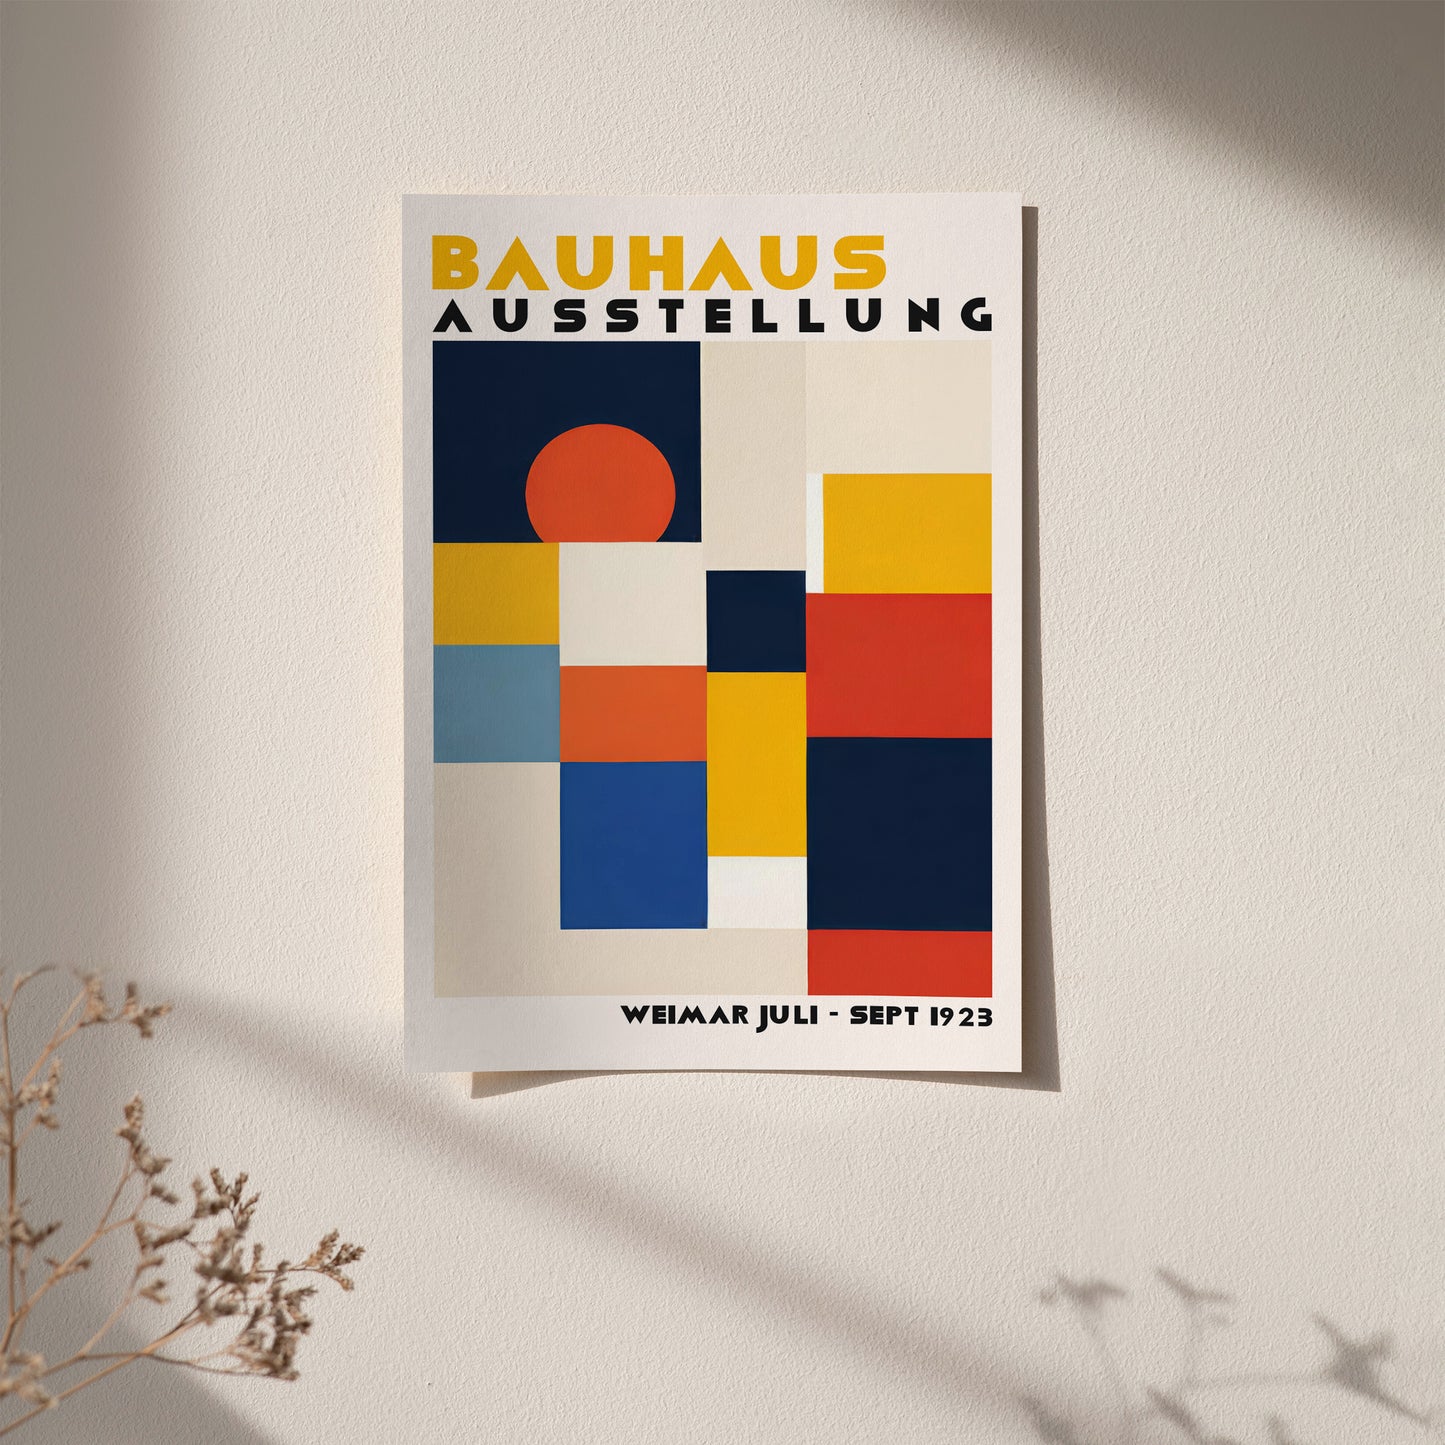 Bauhaus Retro Exhibition Poster